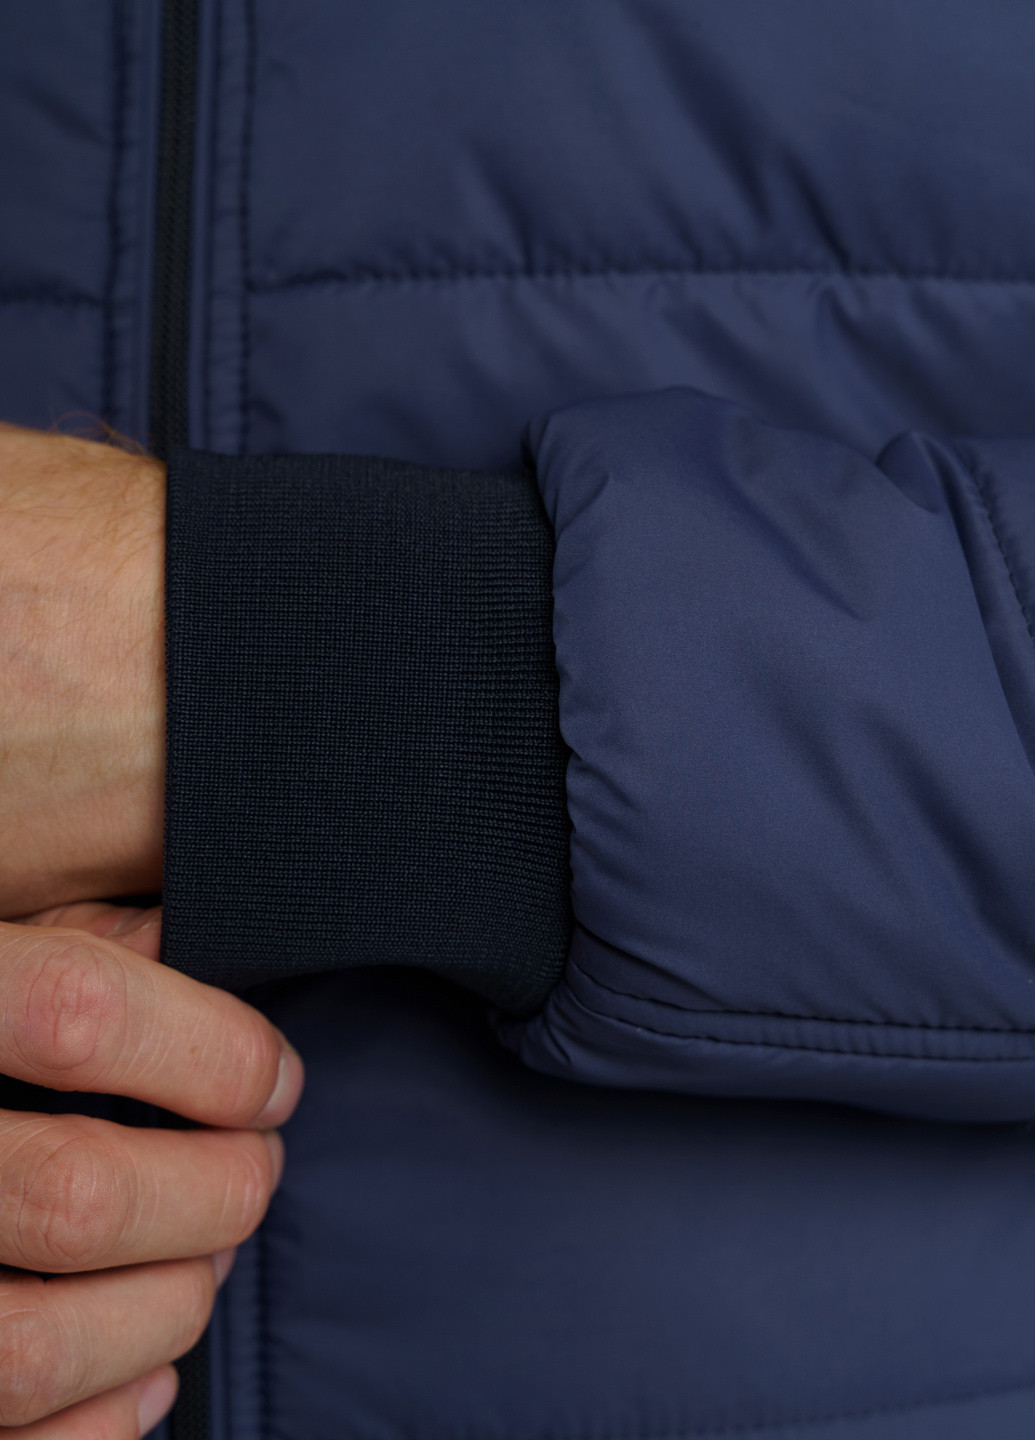 Синя демісезонна куртка чоловіча Arber Varsity Jacket H19